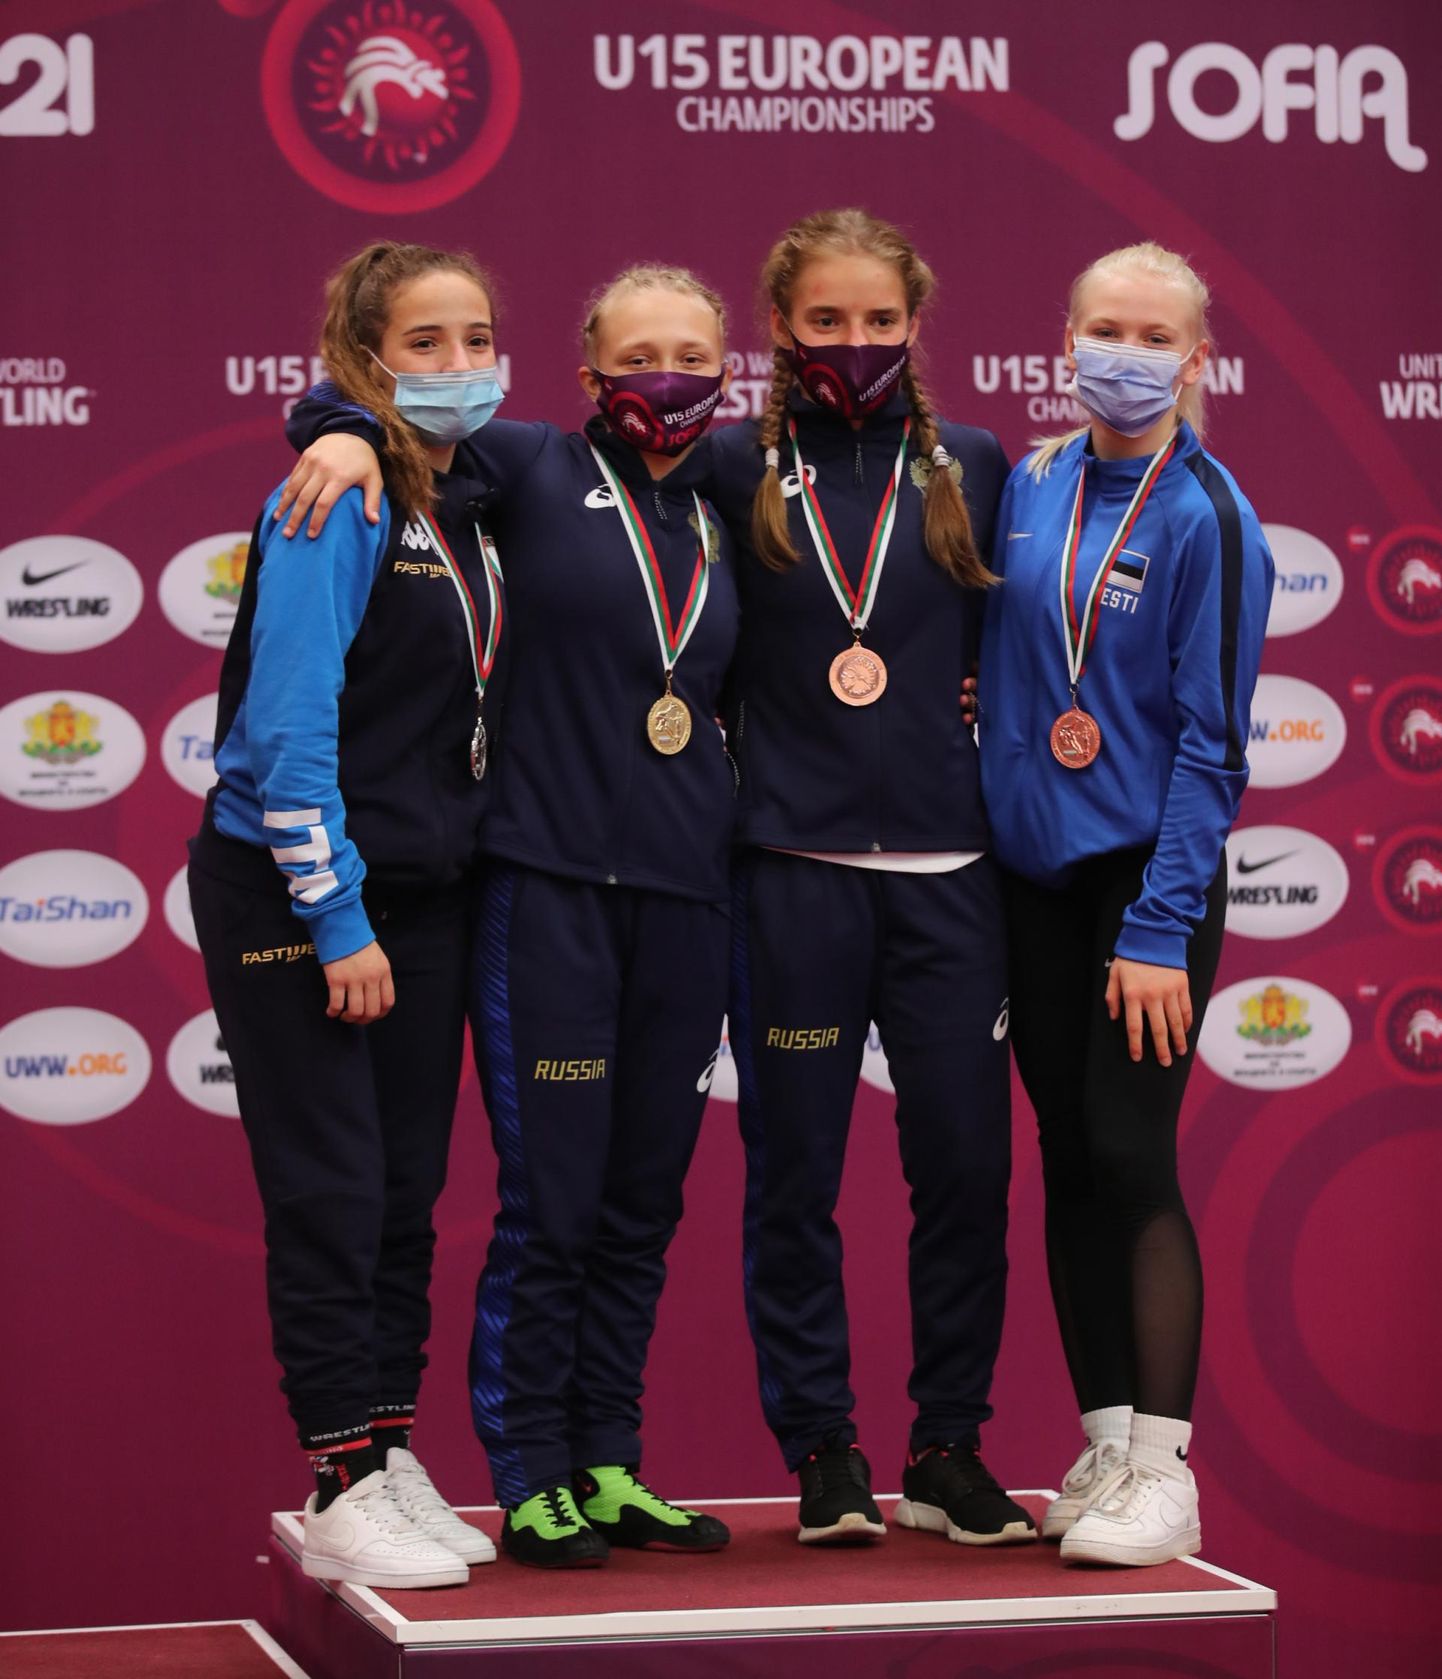 Sügisest Rain Aleksandrovi käe all Viljandi spordikooli maadlusnoortega treenima asunud Lisette Böttker (paremal) võitis läinud nädalavahetusel Bulgaarias Euroopa U-15 vanuseklassi meistrivõistlustel pronksmedali.